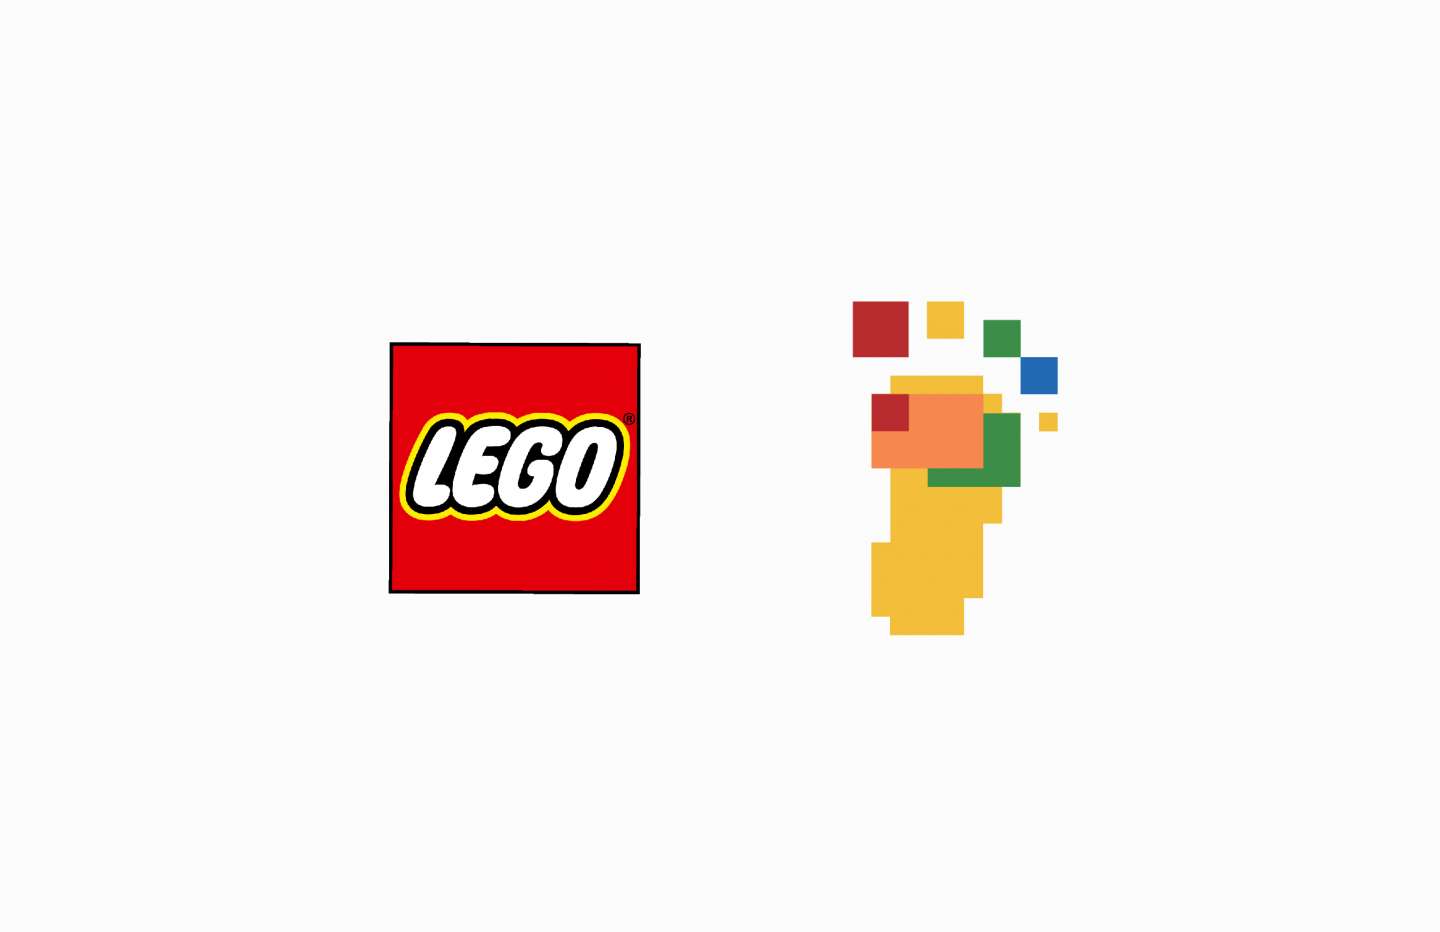 LEGO-LEXOLOGY